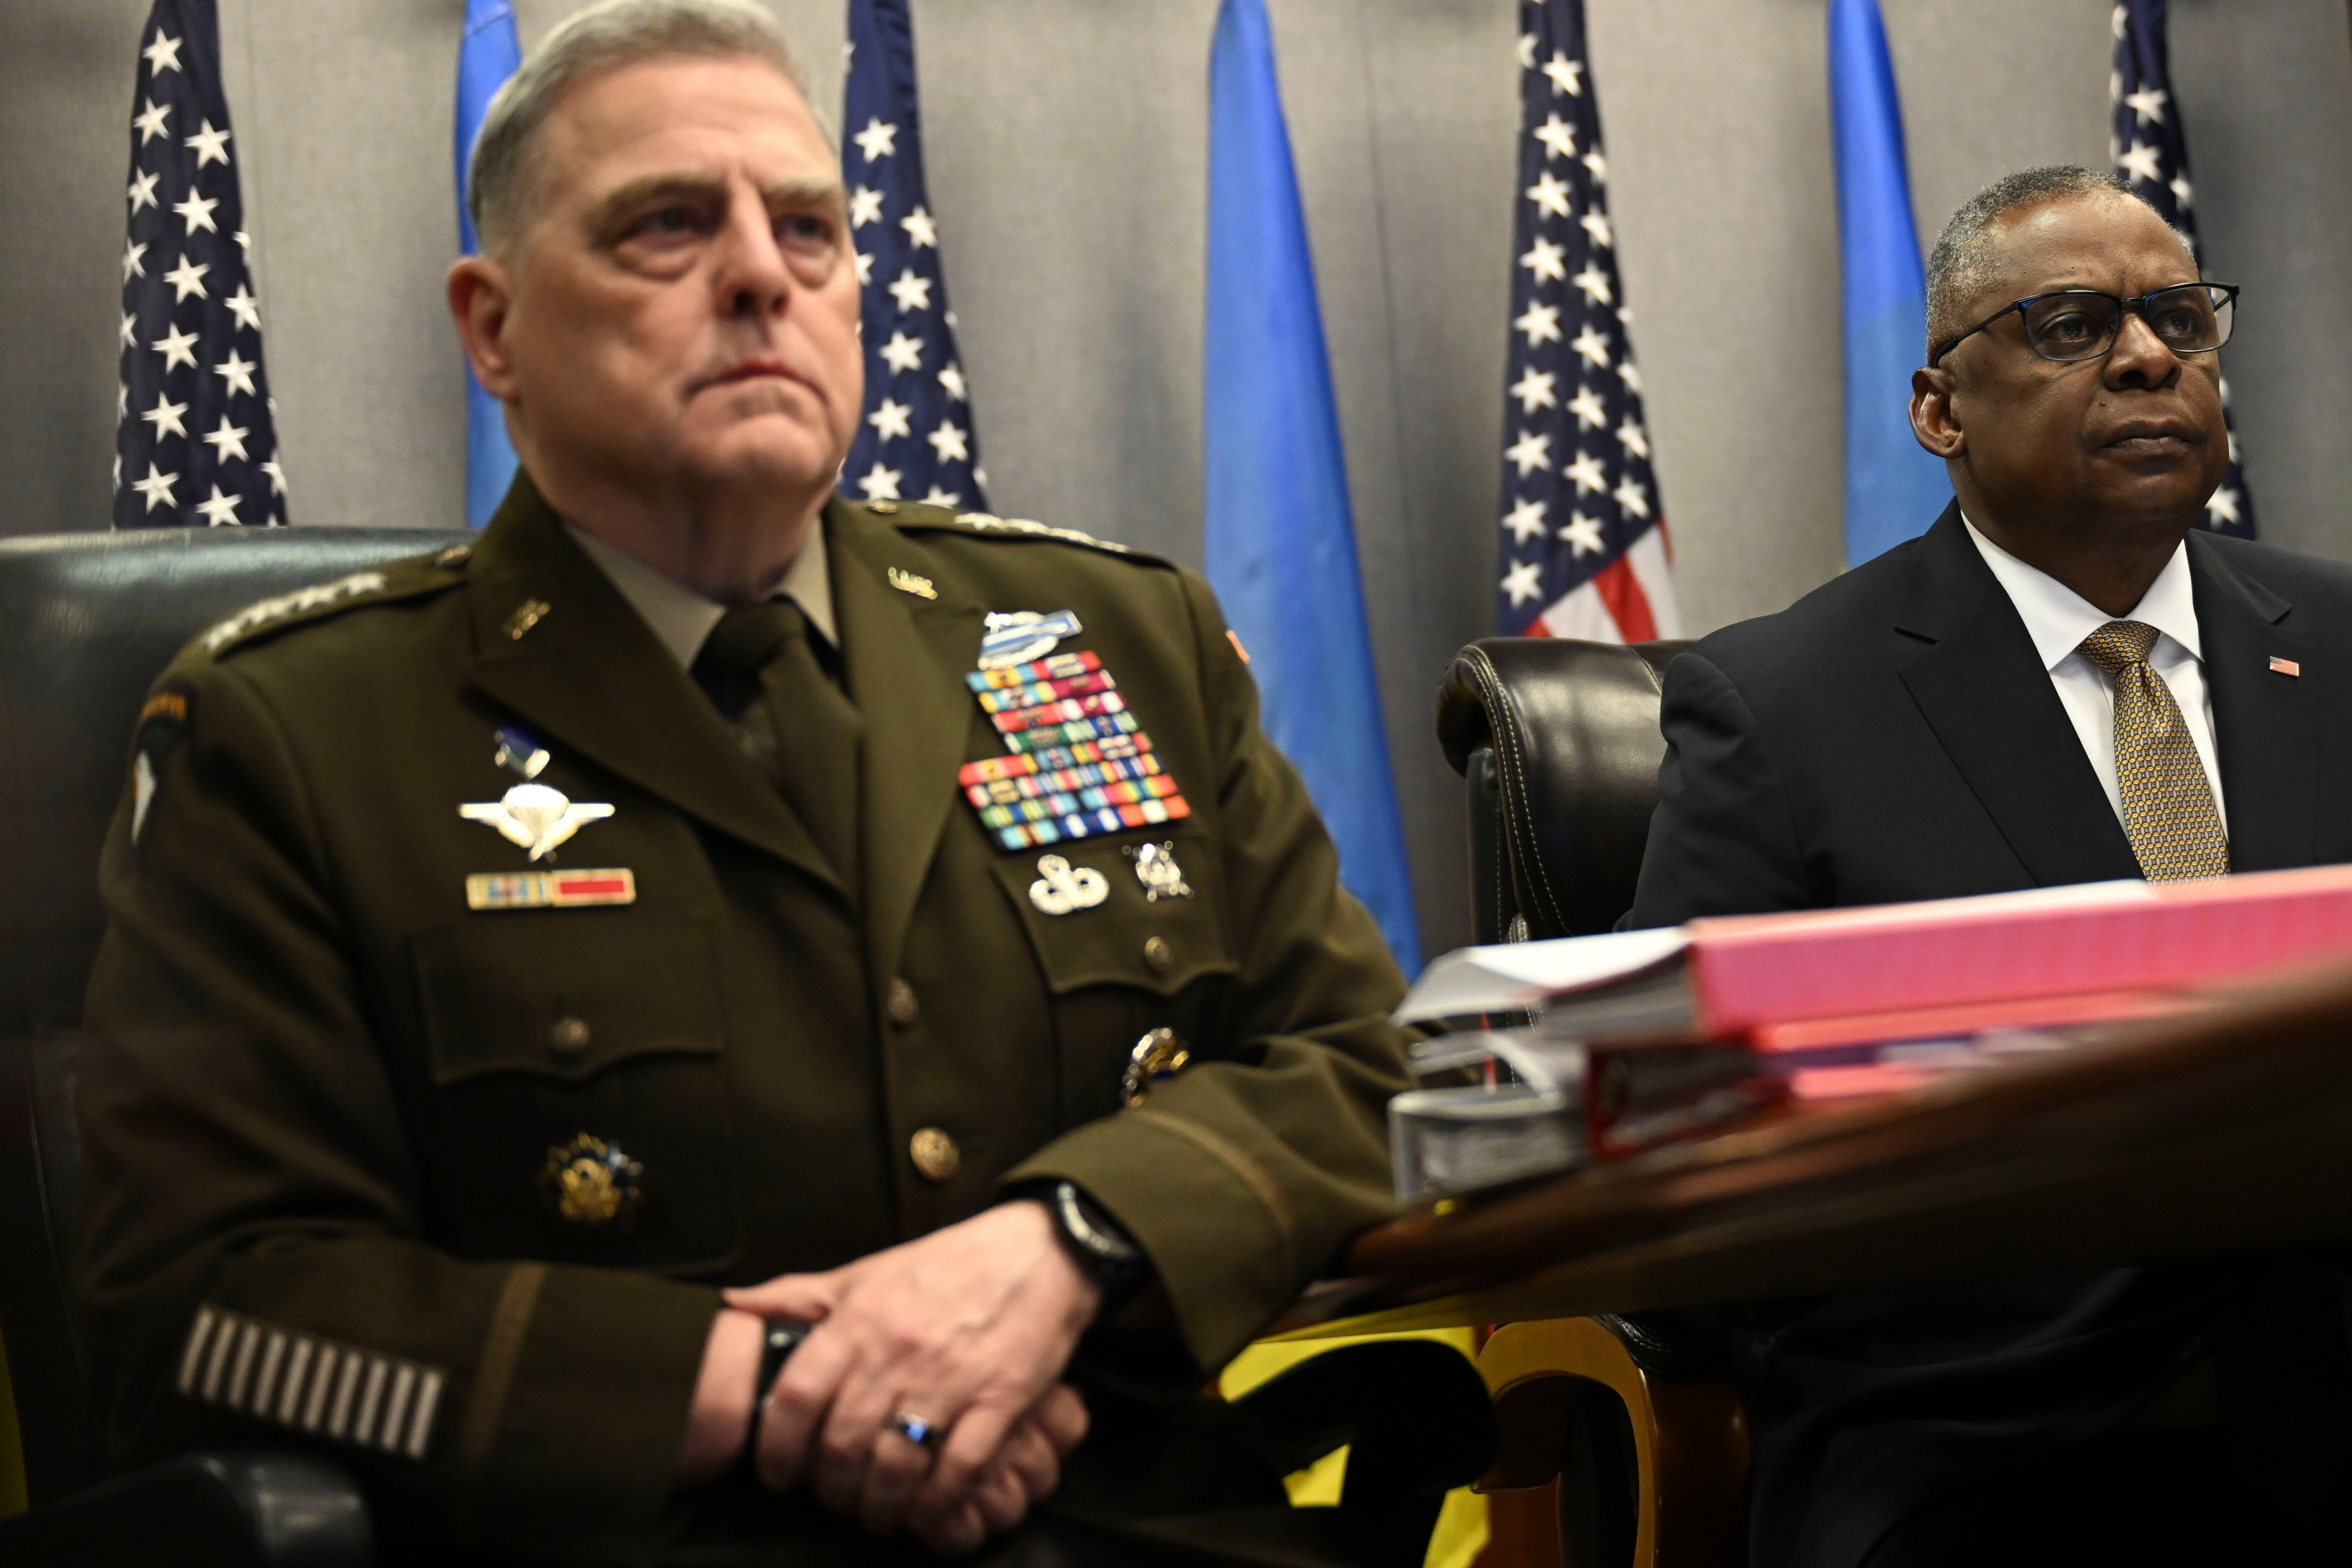 El secretario de Defensa de EEUU Lloyd Austin (d) con el jefe del Estado Mayor general Mark Milley en el Pentágono en Washington el 15 de marzo de 2023. (Andrew Caballero-Reynolds/Pool via AP)